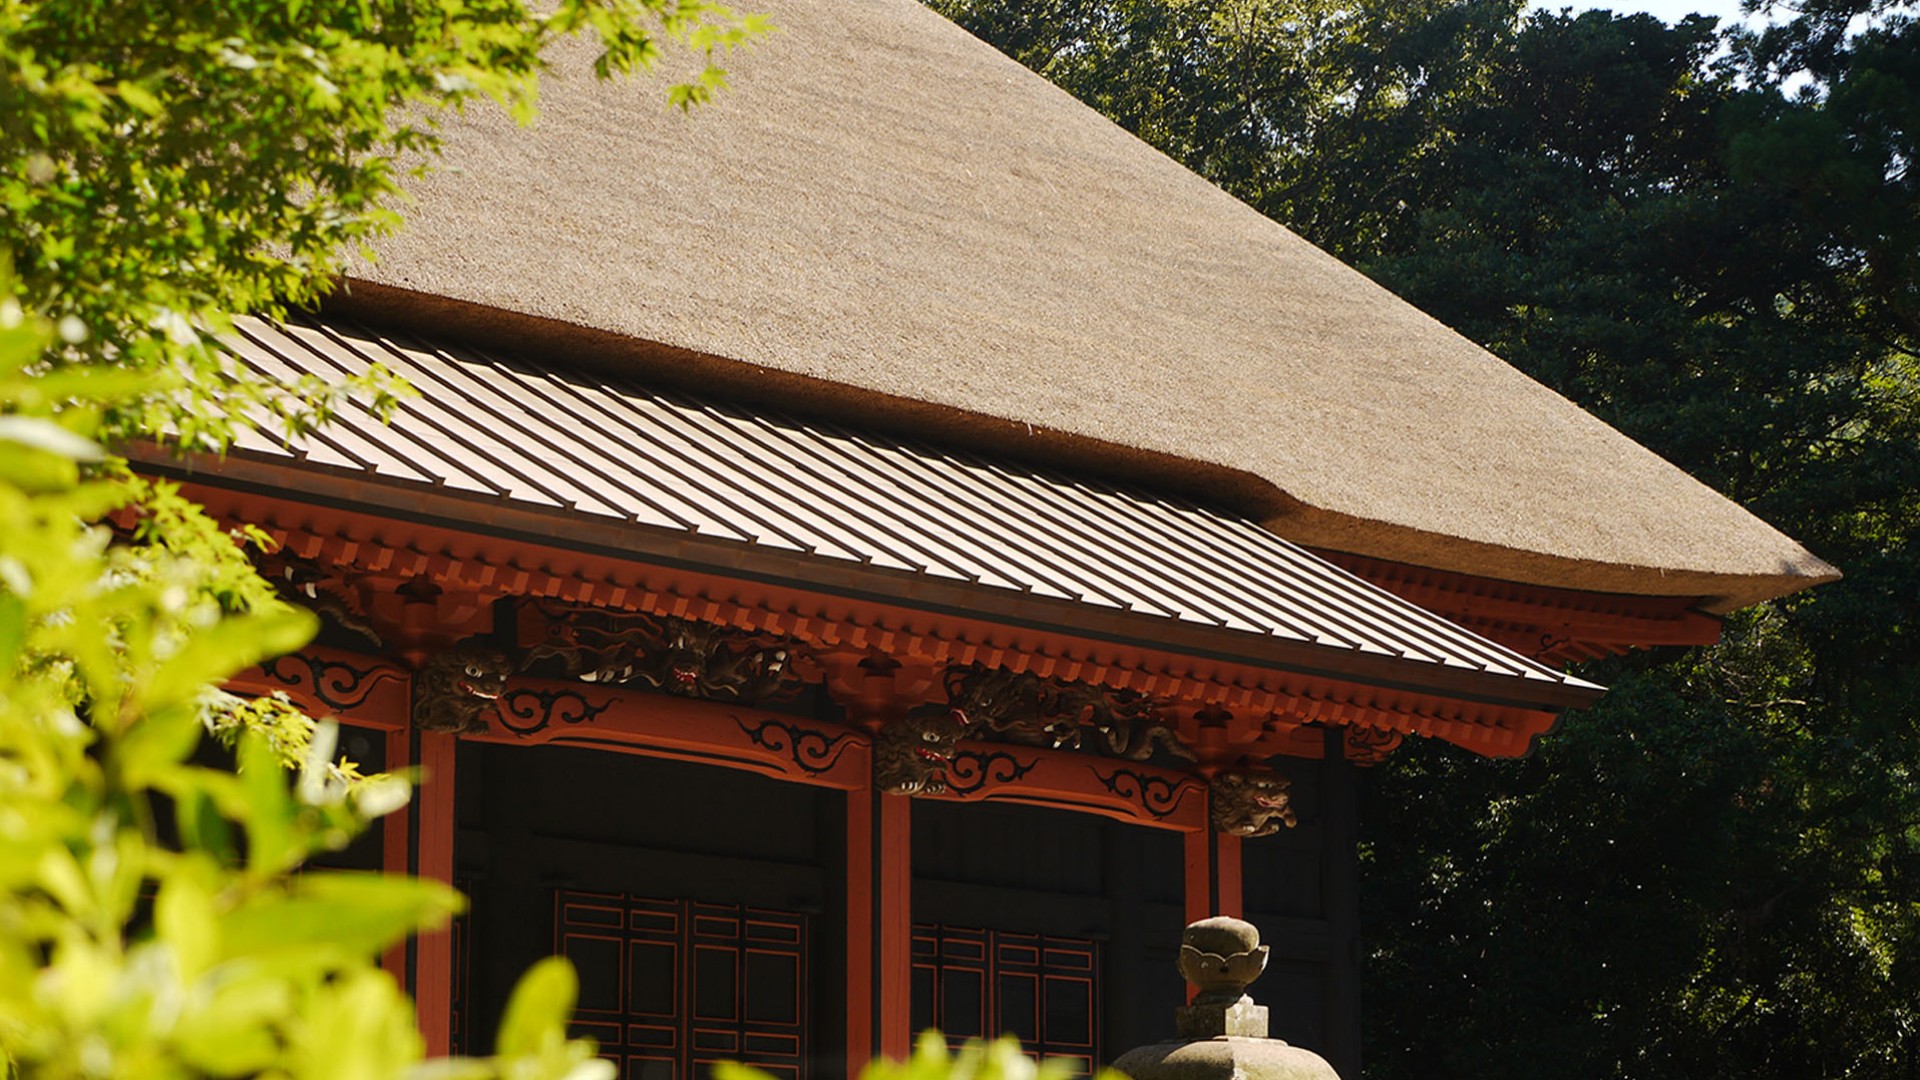 Hinata Yakushi Treasure Hall (Yakushi Nyorai, Japan's Three Yakushi)